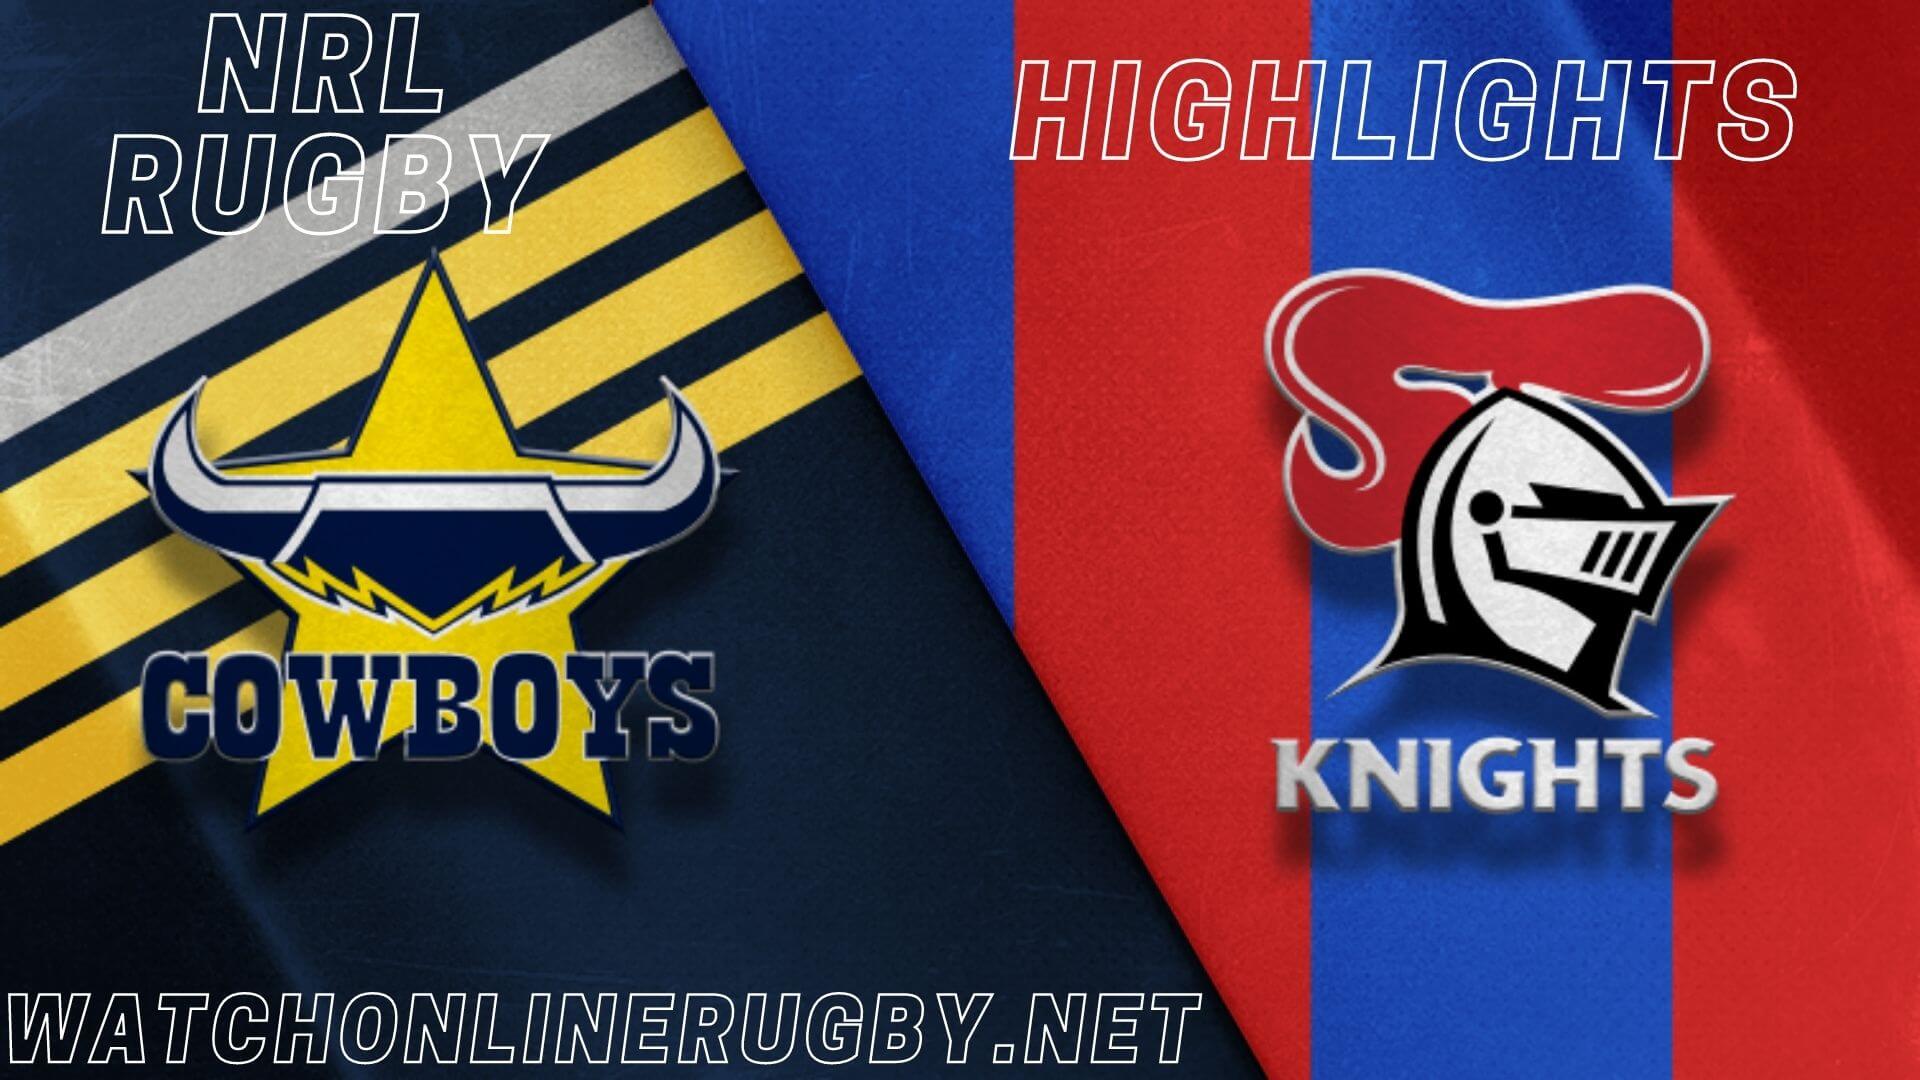 Cowboys Vs Knights Highlights RD 9 NRL Rugby